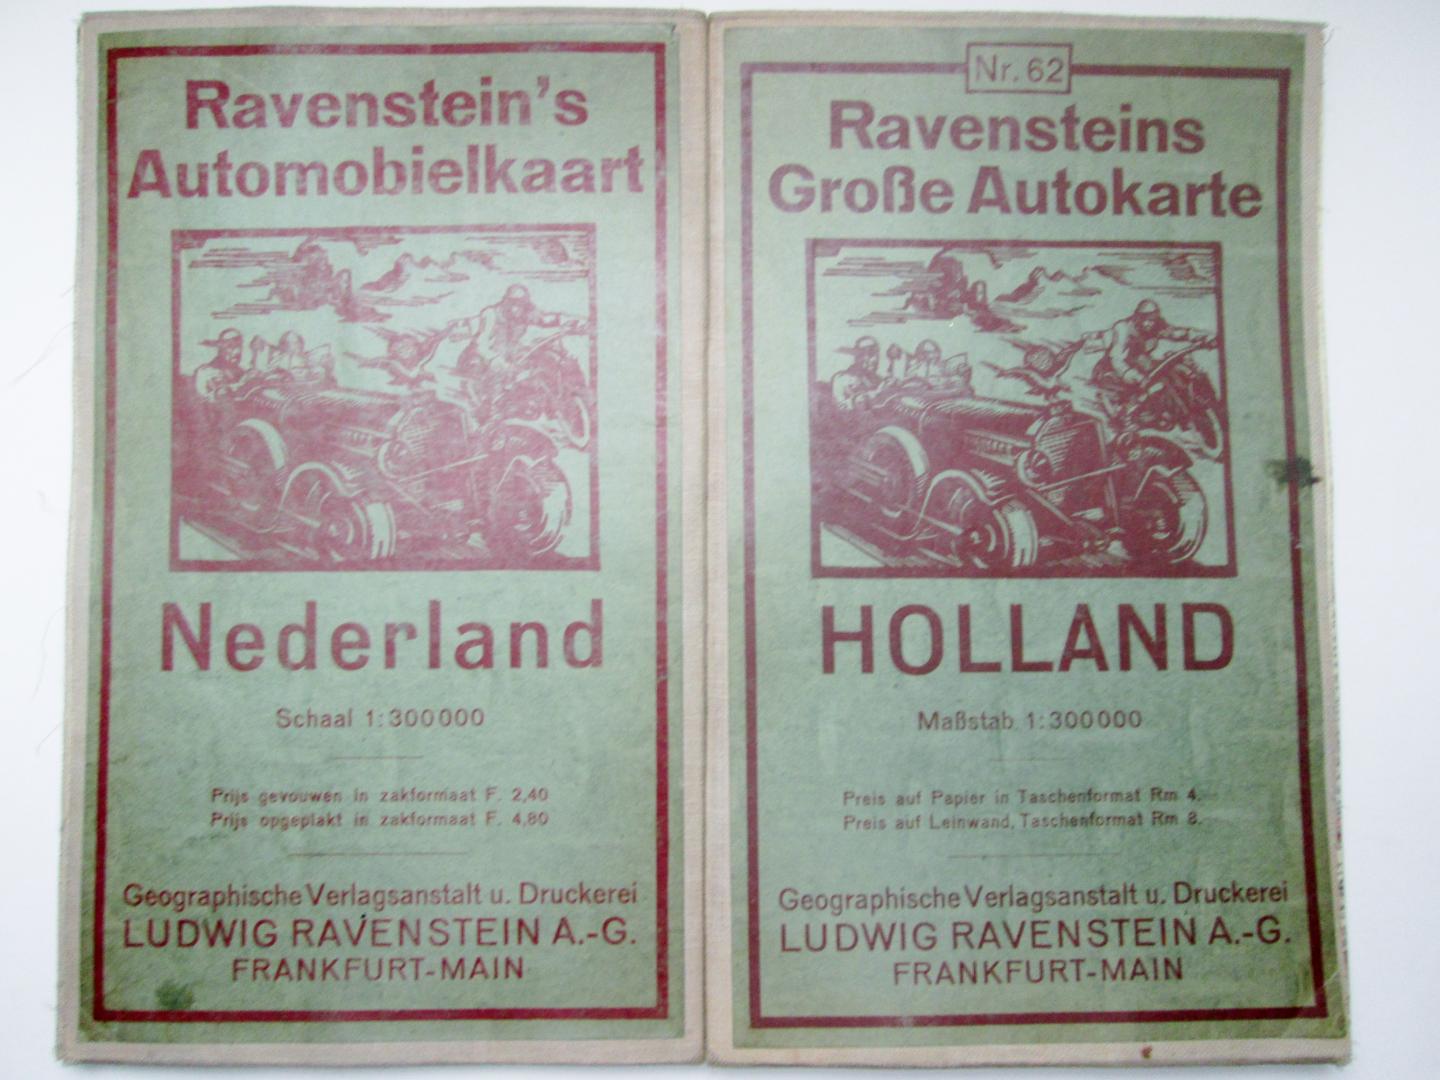 Ludwig Ravenstein - Ravenstein's Automobielkaart Nr. 62 - Nederland,  Ravensteins Grosse Autokarte - Holland, schaal 1:300.000